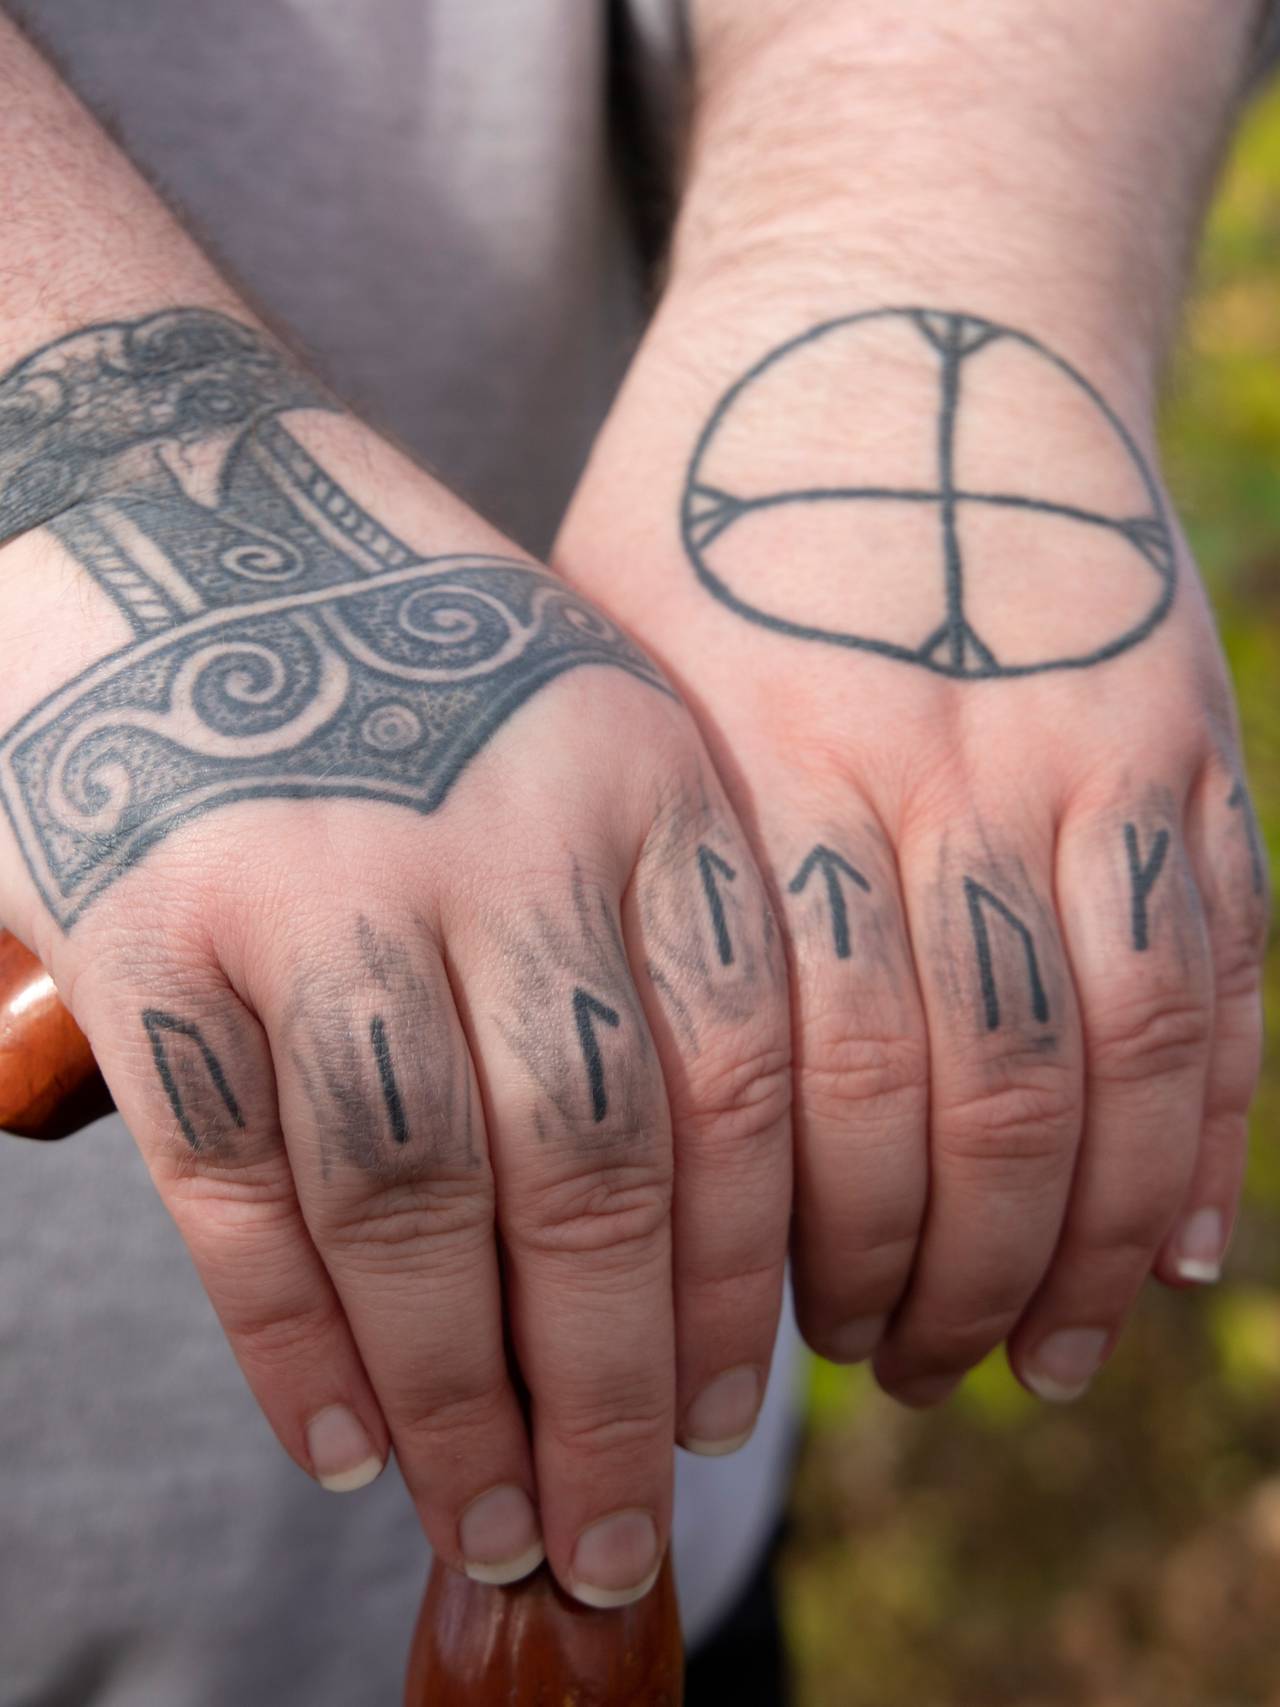 Bilde av hendene til Ravn Villtokt, hvor hun har tatovert Villtokt.